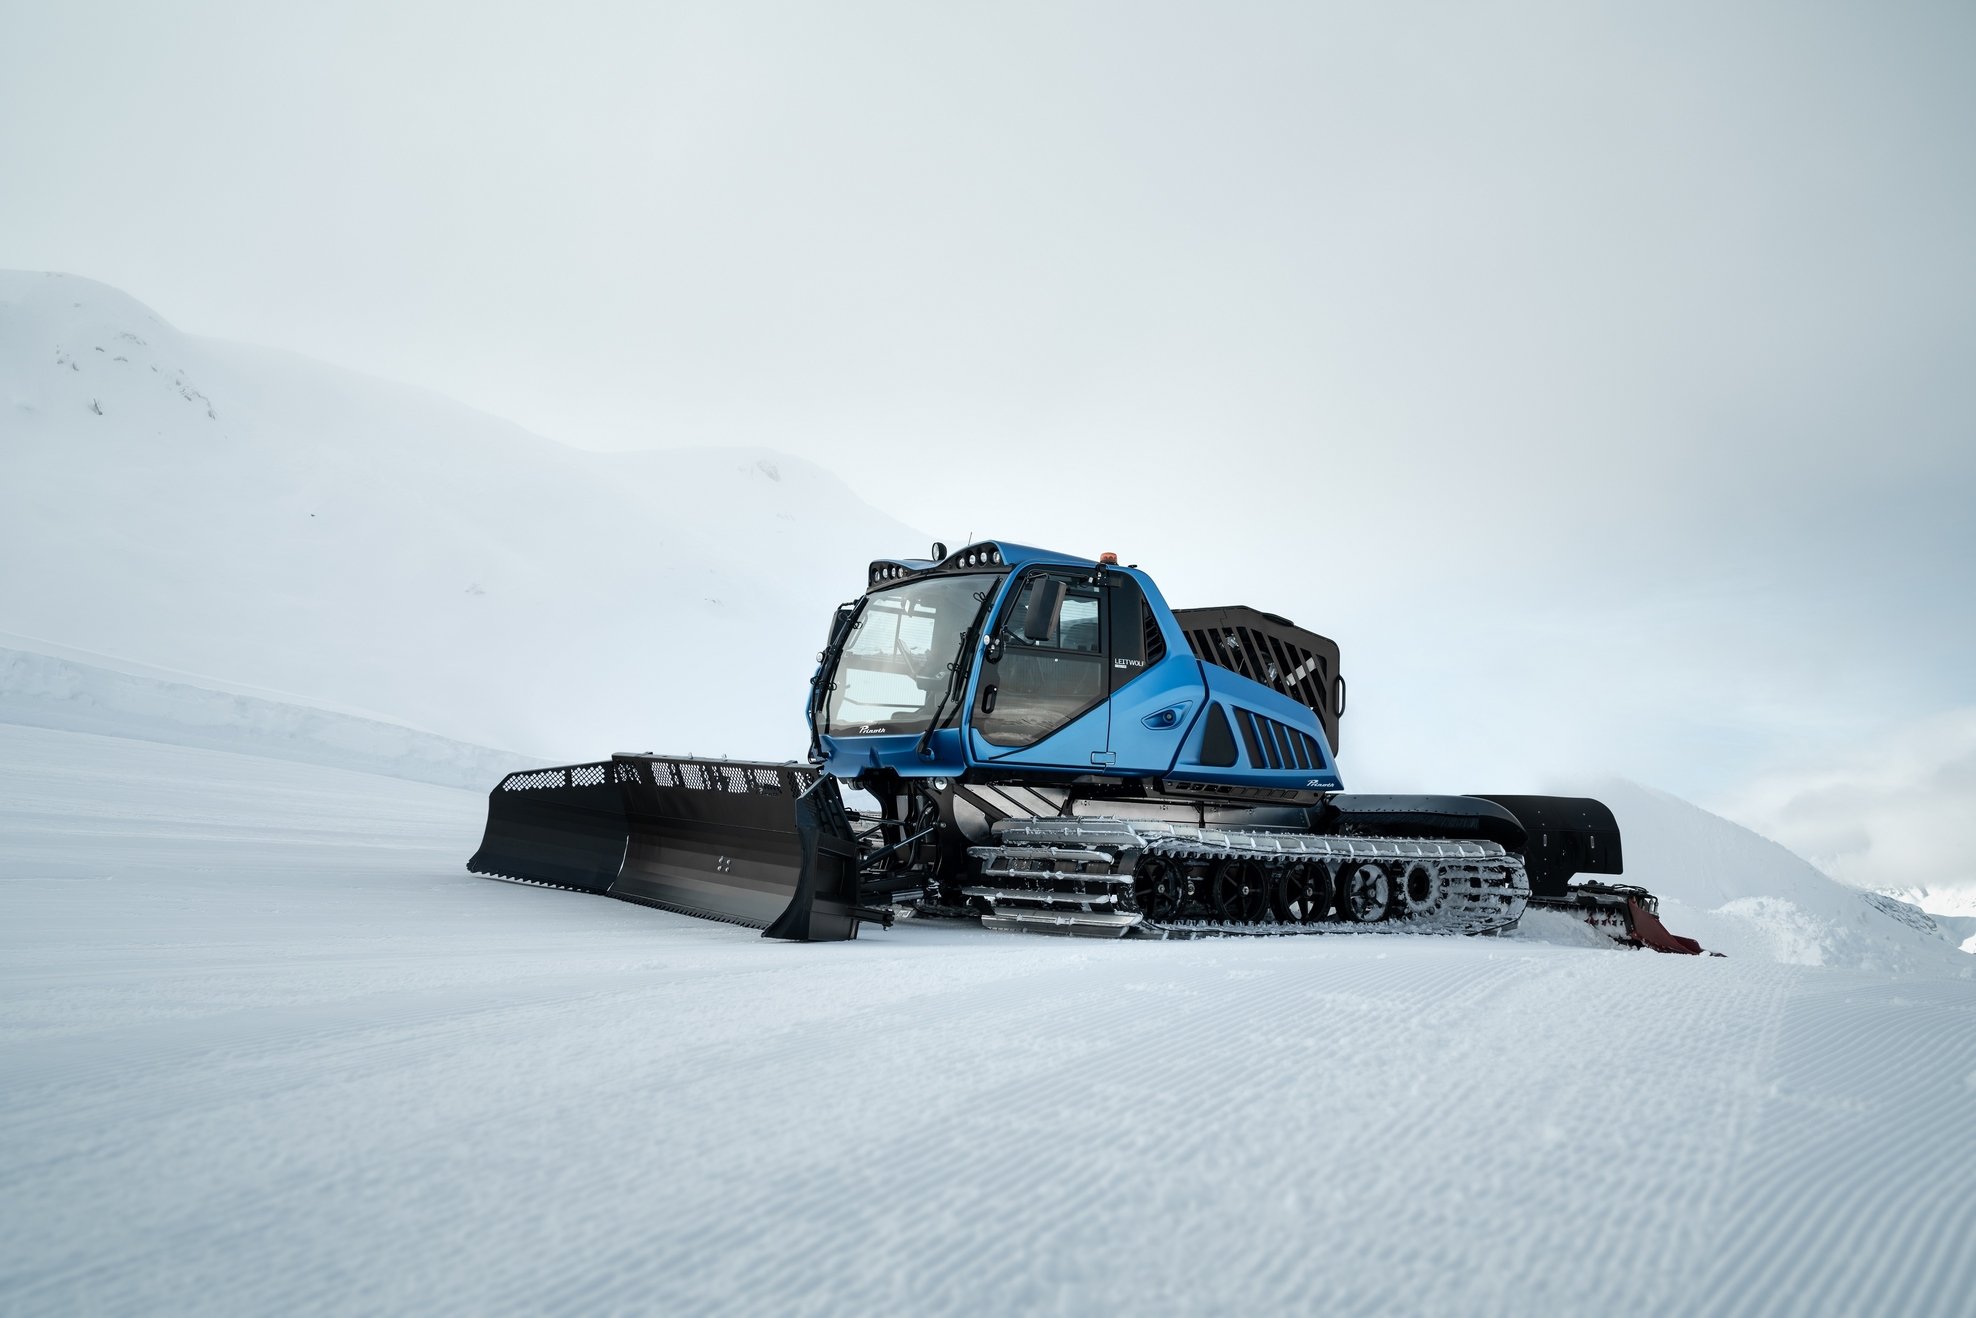 Wereldbeker alpineskiën heeft primeur van sneeuwruimer op waterstof